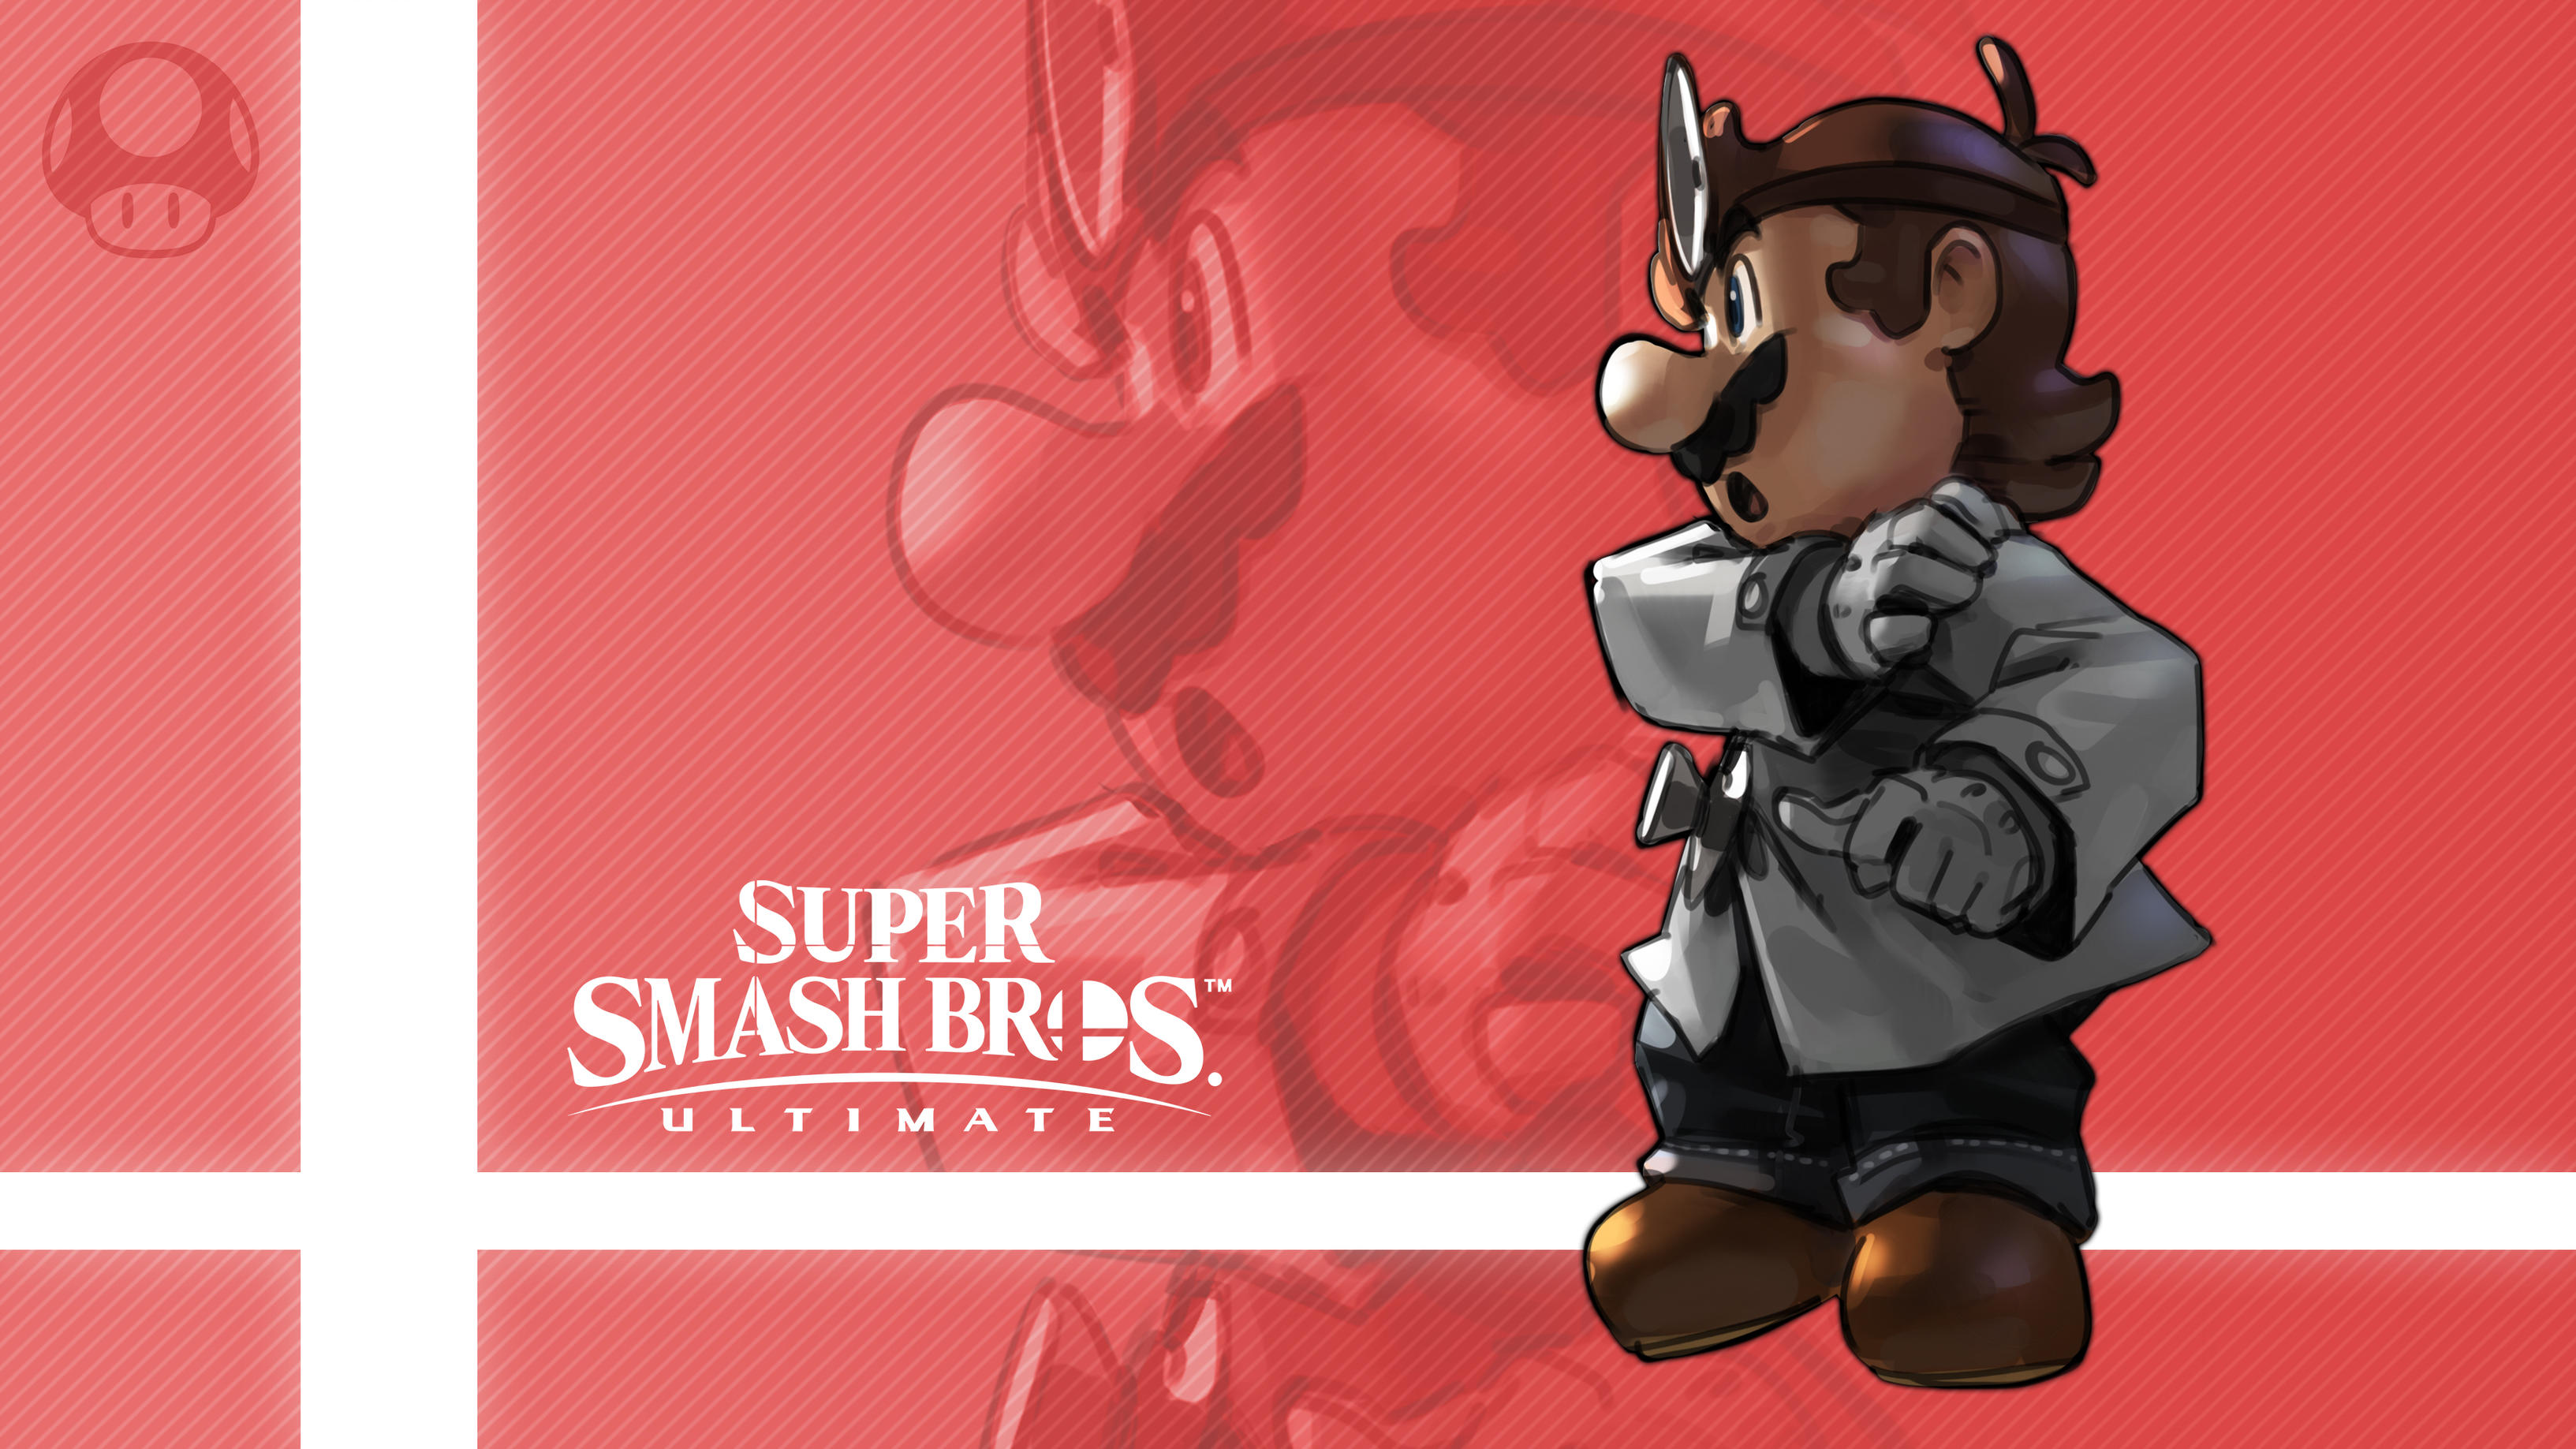 Dr Mario Super Smash Bros Ultimate 3266x1837